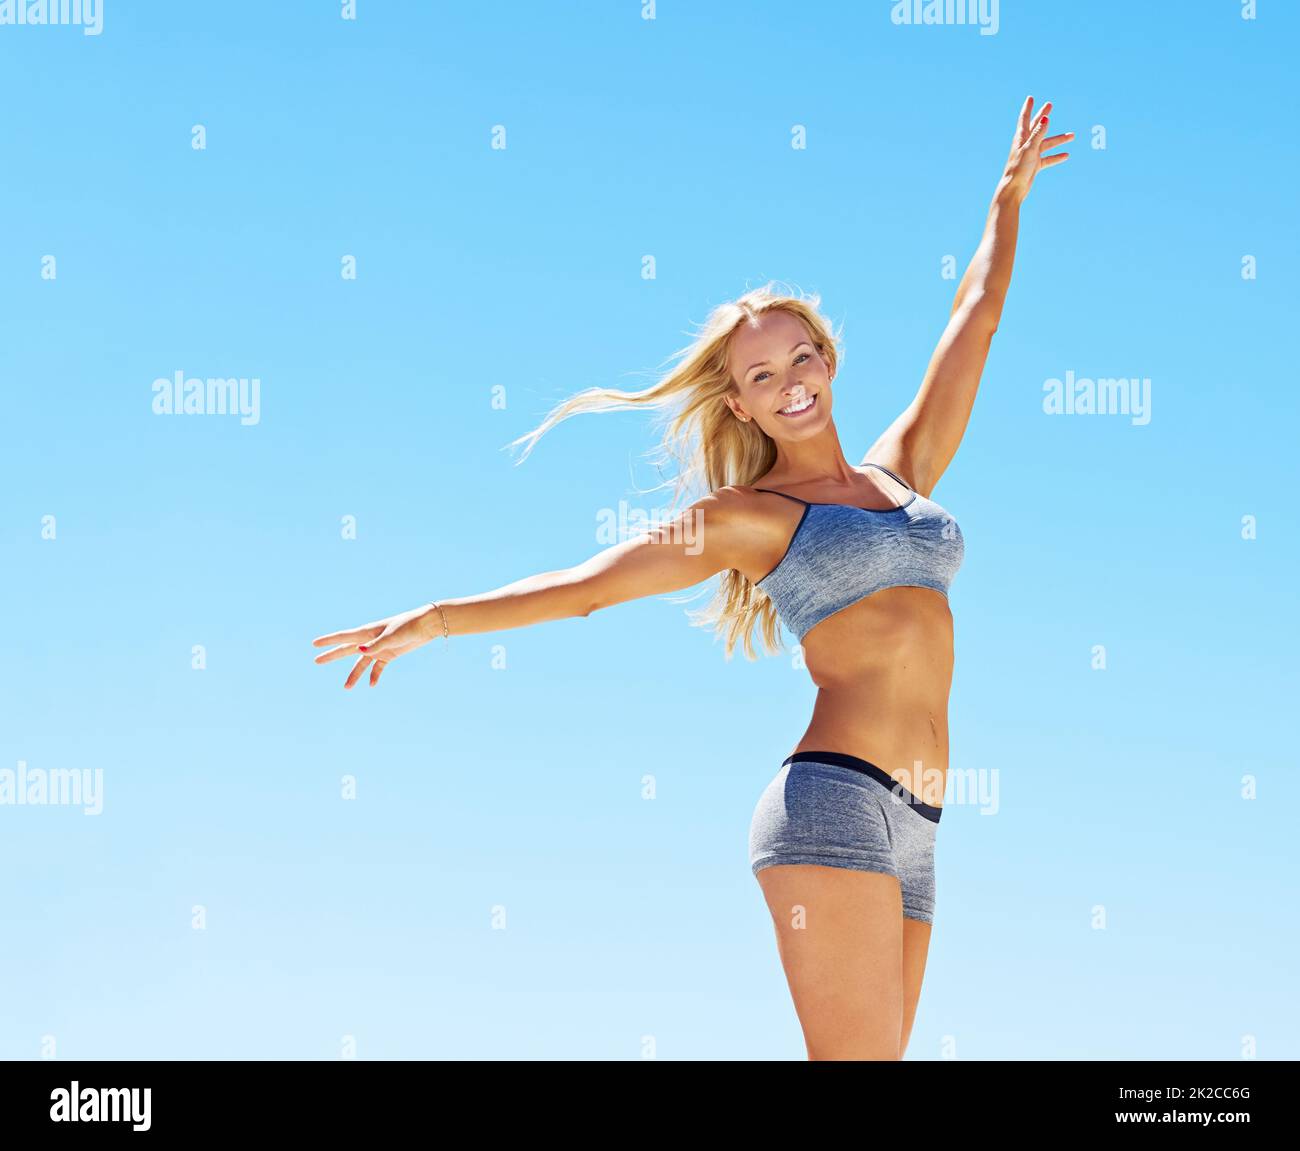 So perfekt wie das Wetter. Porträt einer jungen Frau in Trainingsausrüstung, die vor einem blauen Himmel steht. Stockfoto